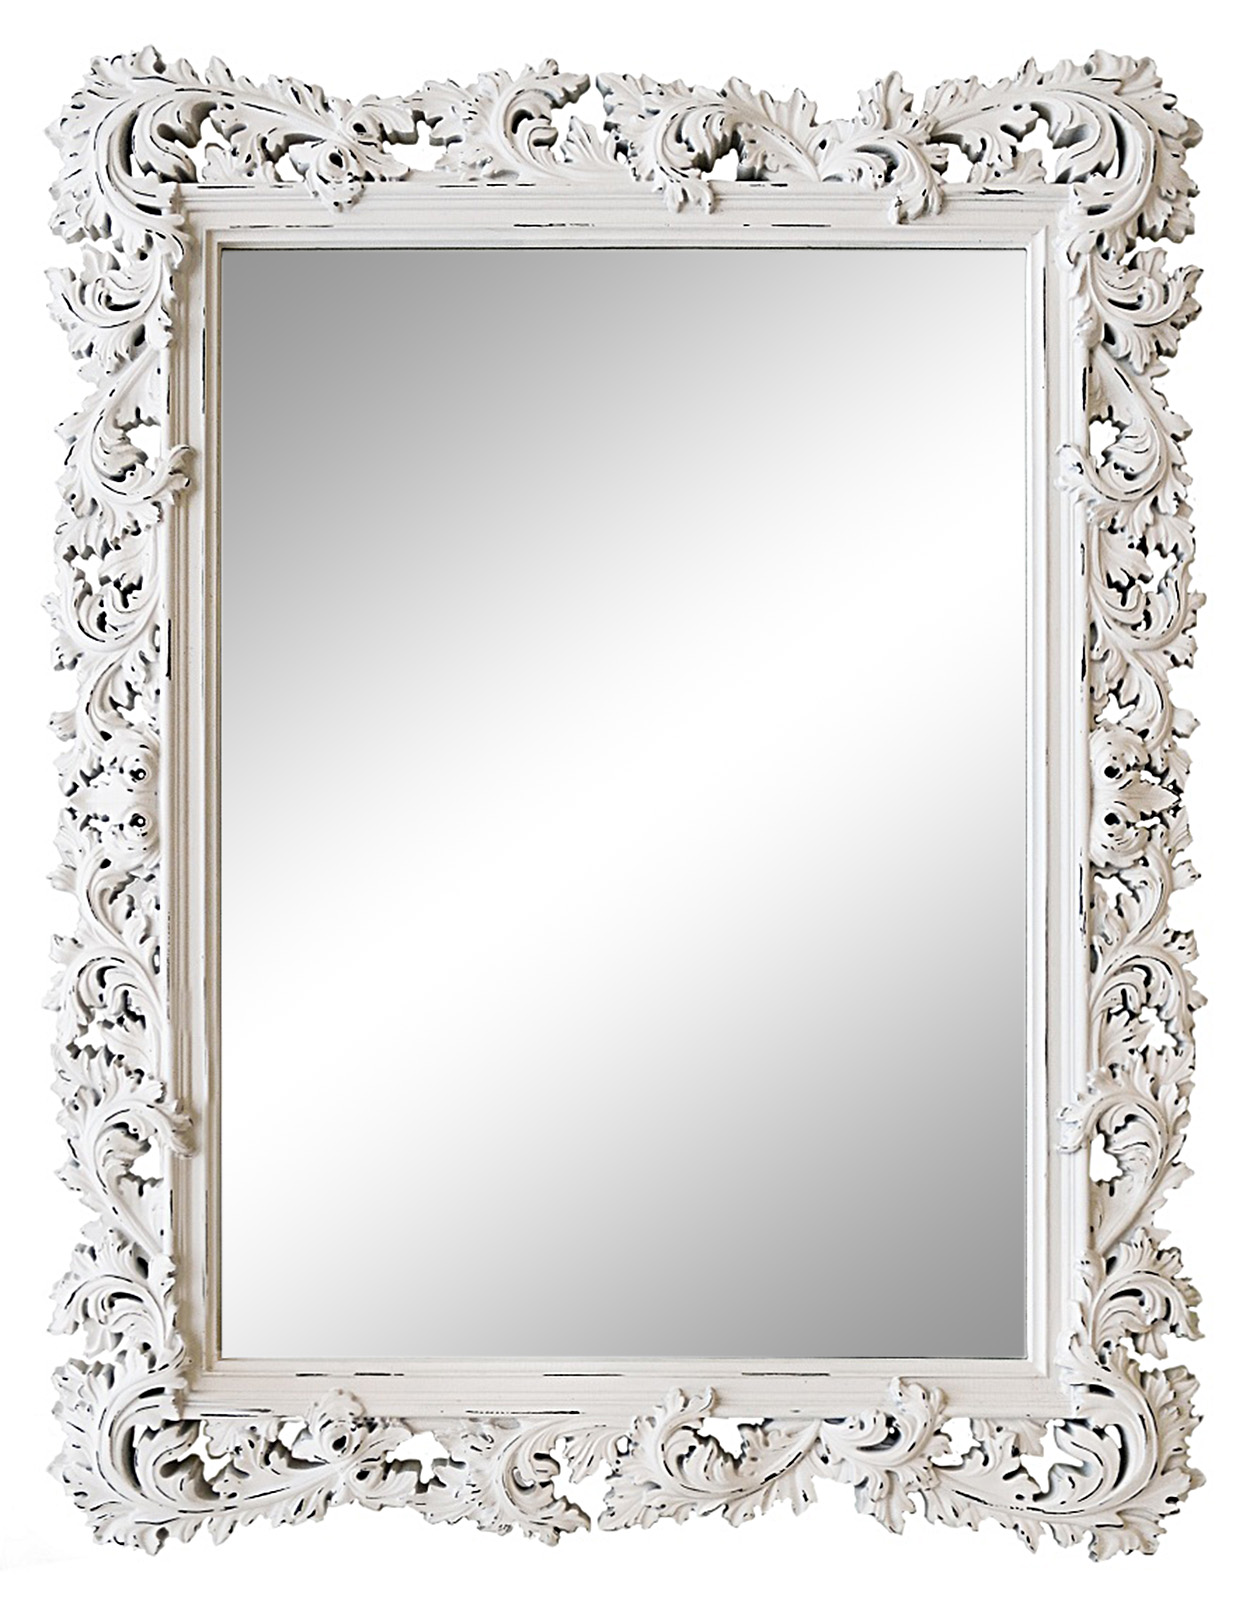 Купить зеркало в саратове. Зеркало Caprigo pl040-vot бронза. Зеркало прямоугольное в рамке. Обрамление зеркала. Зеркало в белой раме настенное.